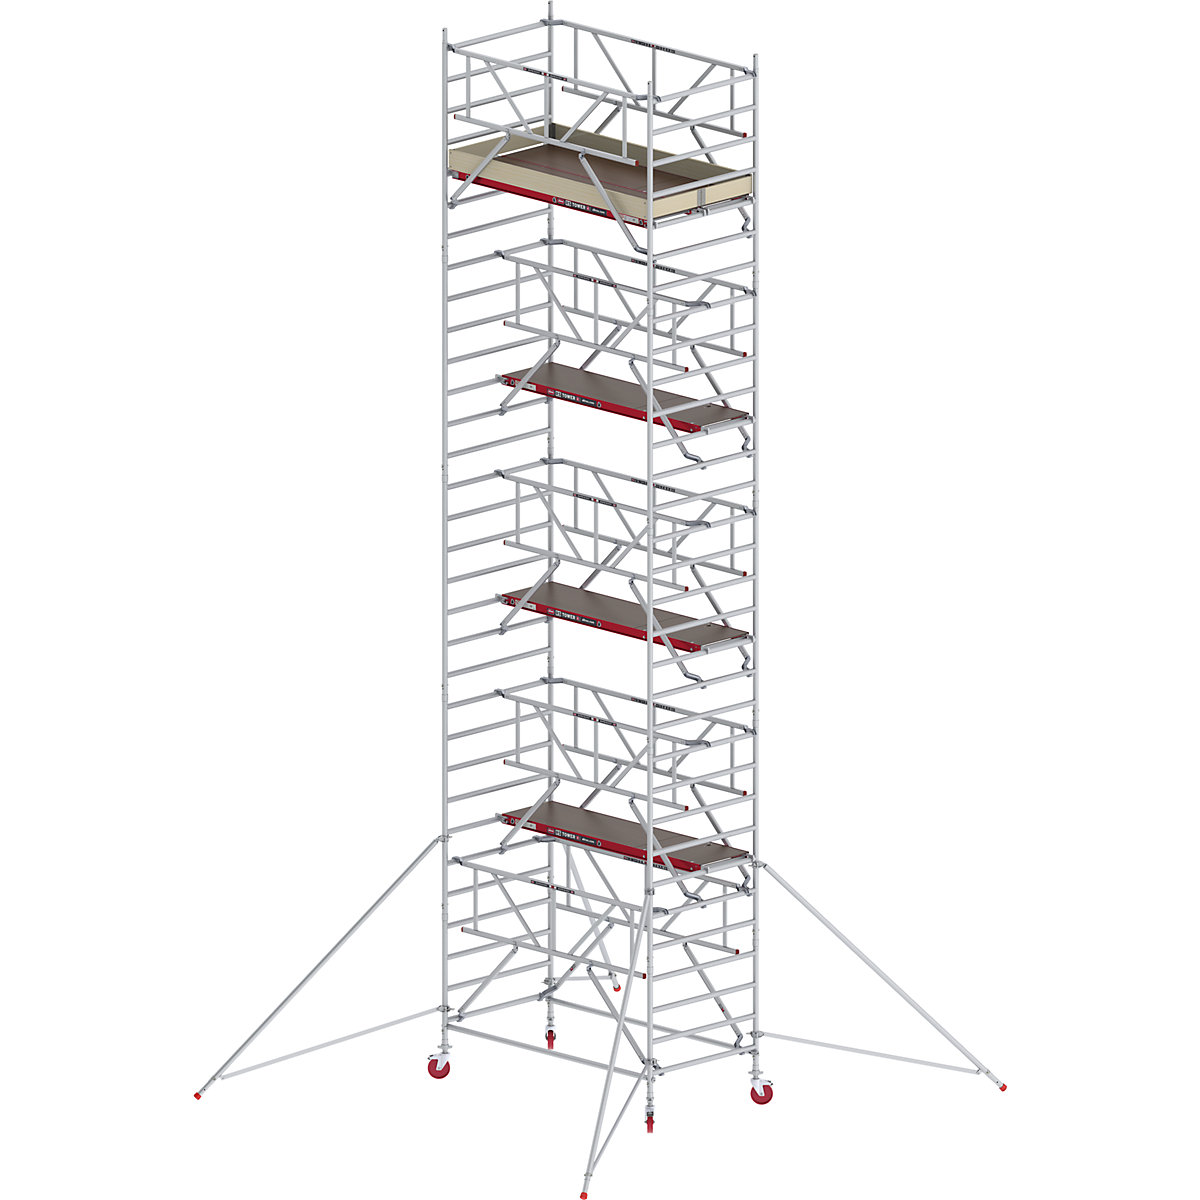 Rusztowanie ruchome RS TOWER 42, szerokie, z poręczą Safe-Quick® – Altrex, platforma drewniana, dł. 2,45 m, wys. robocza 10,20 m-3